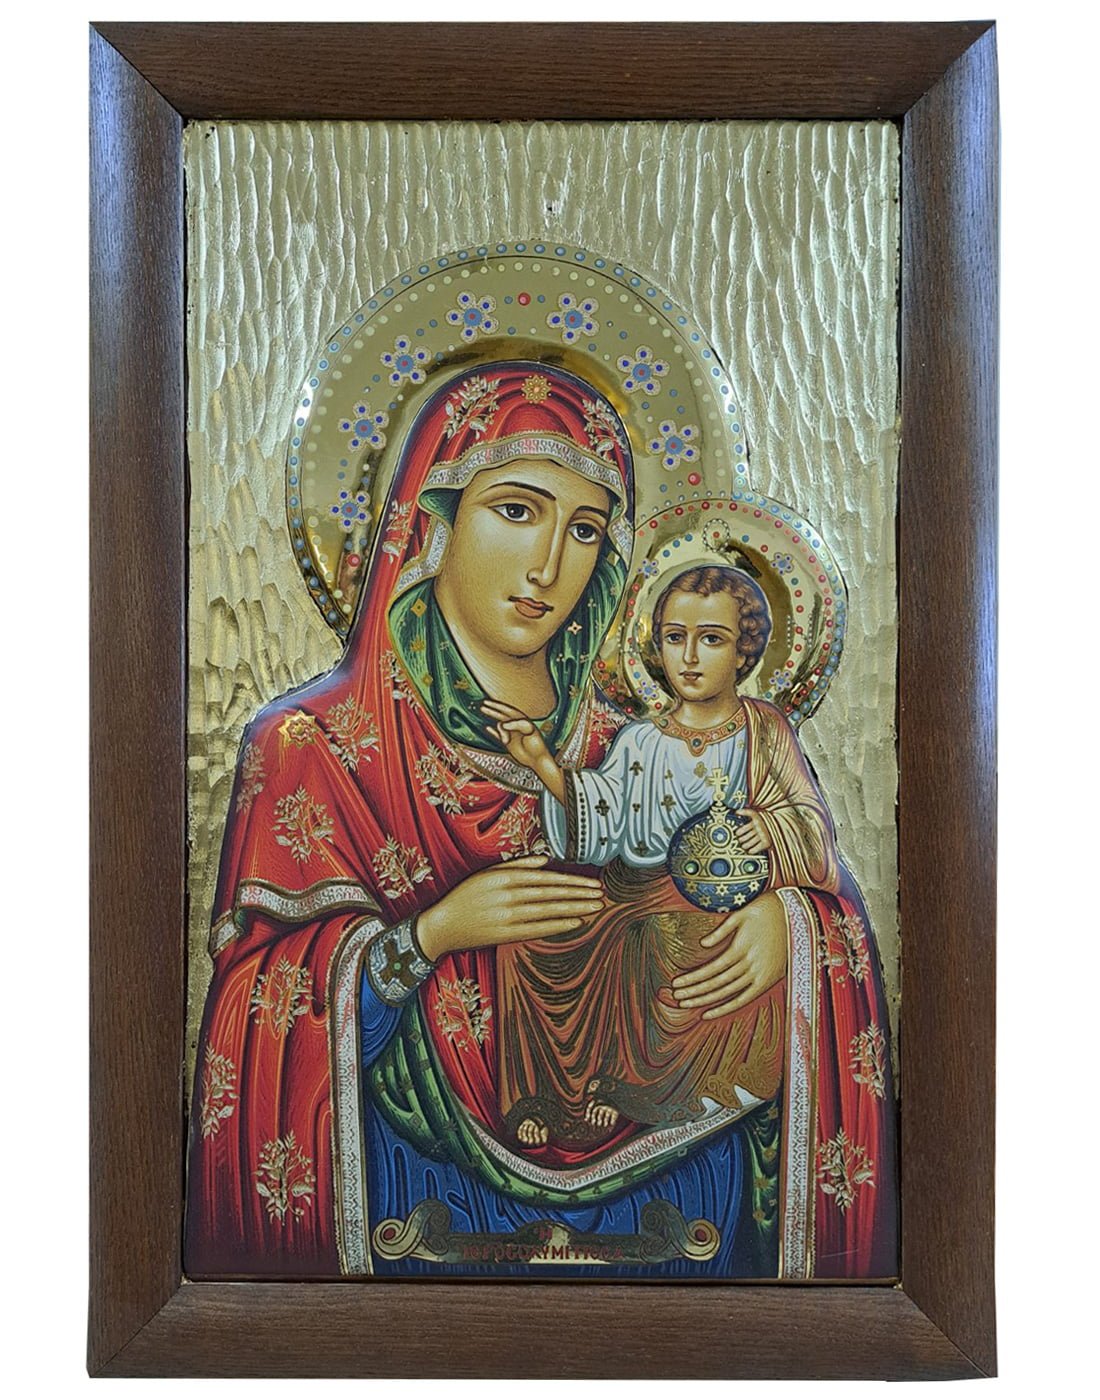 Αγιογραφία Παναγία Ιεροσολυμίτισσα Virgin Mary of Jerusalem Icon